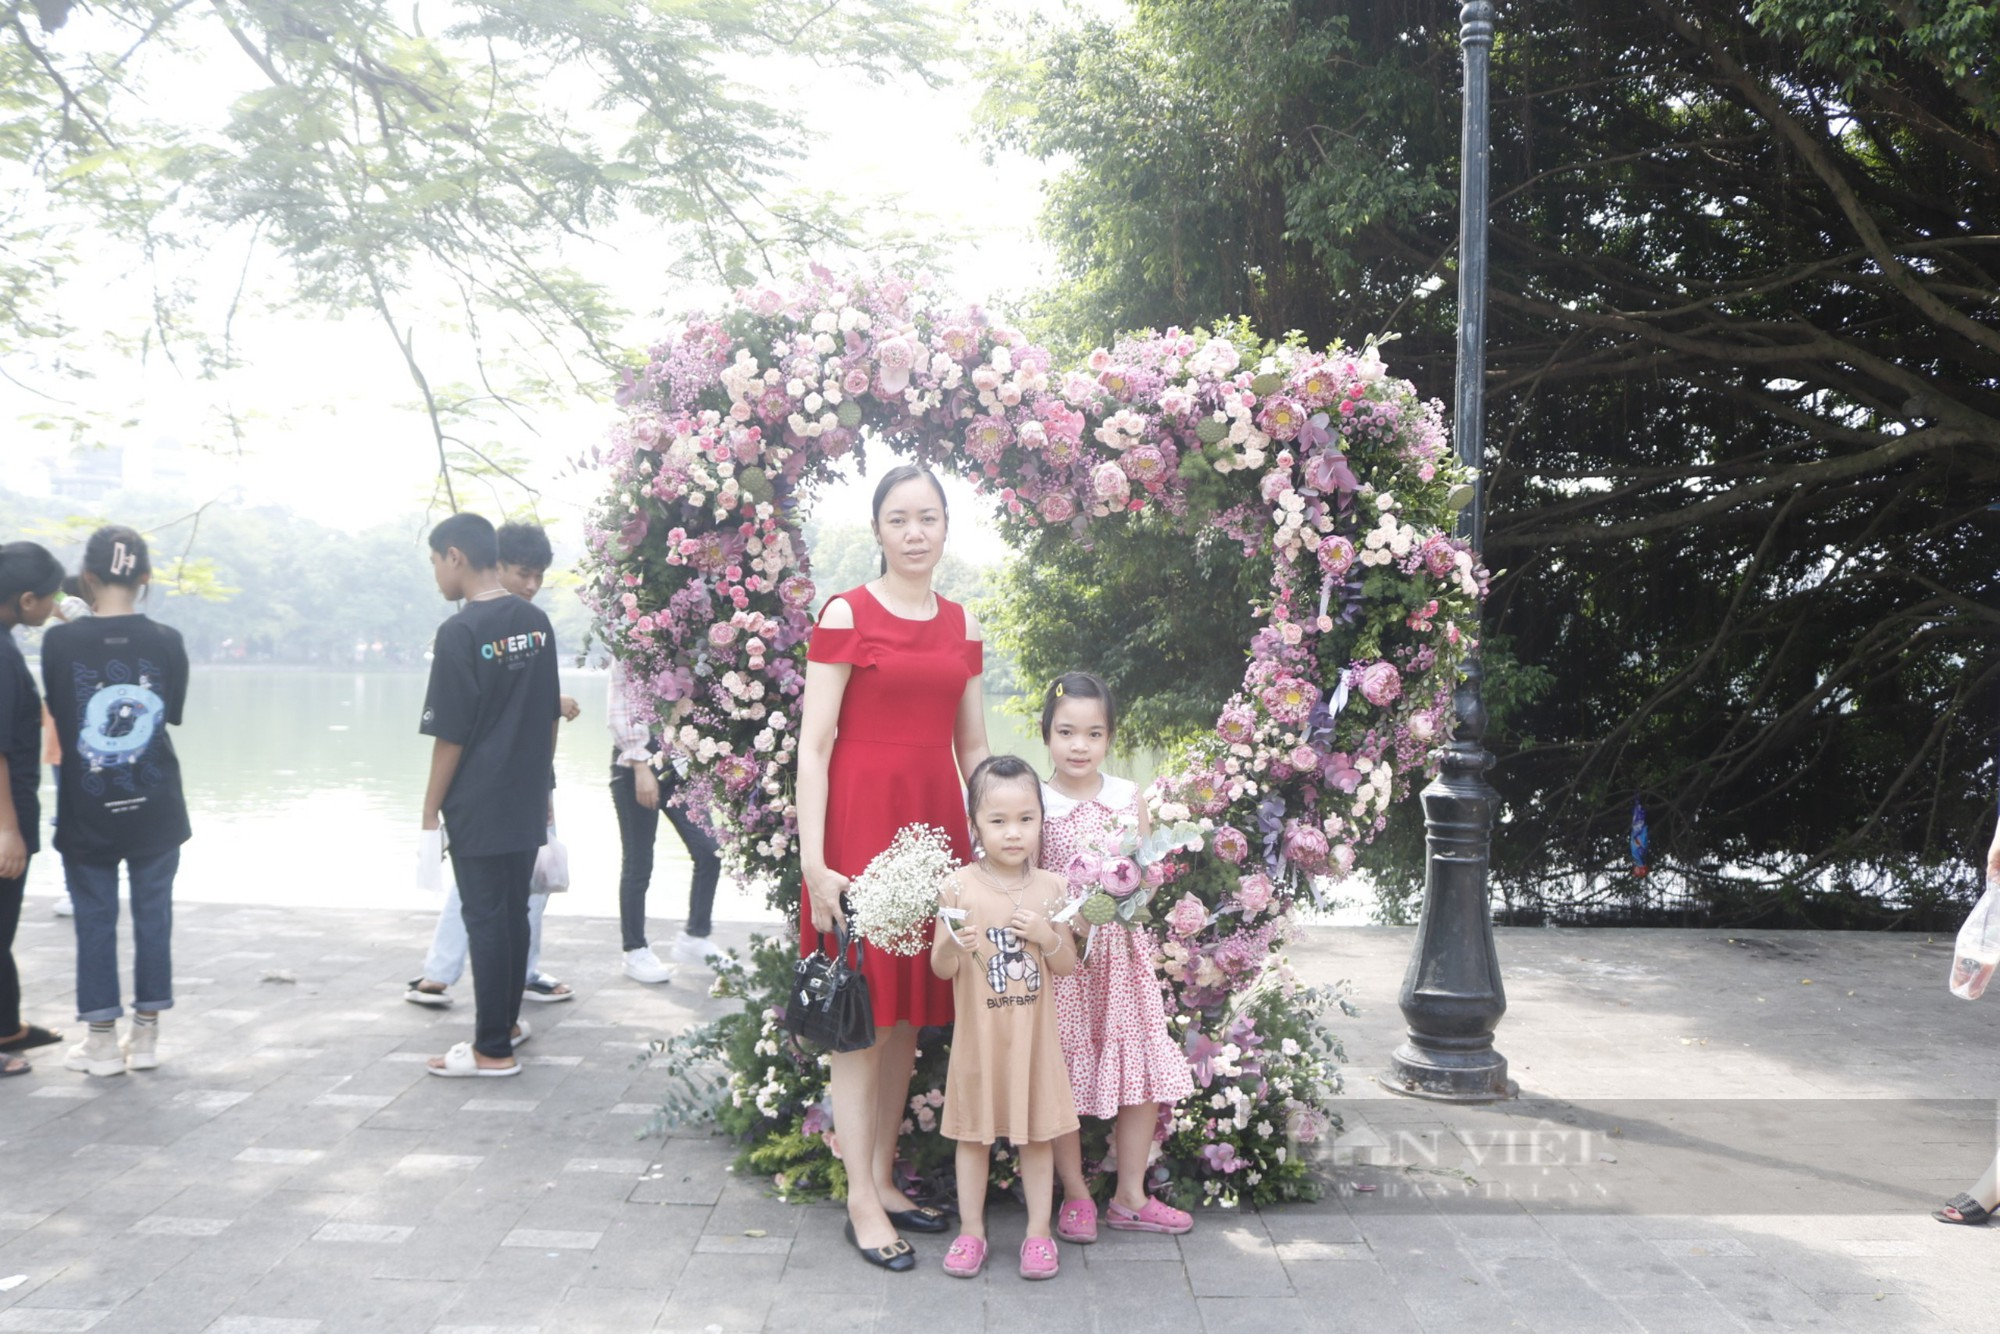 Thăm phố đi bộ cuối tuần, du khách thích thú chụp ảnh hoa sen kết trái tim rực rỡ quanh hồ Hoàn Kiếm - Ảnh 8.